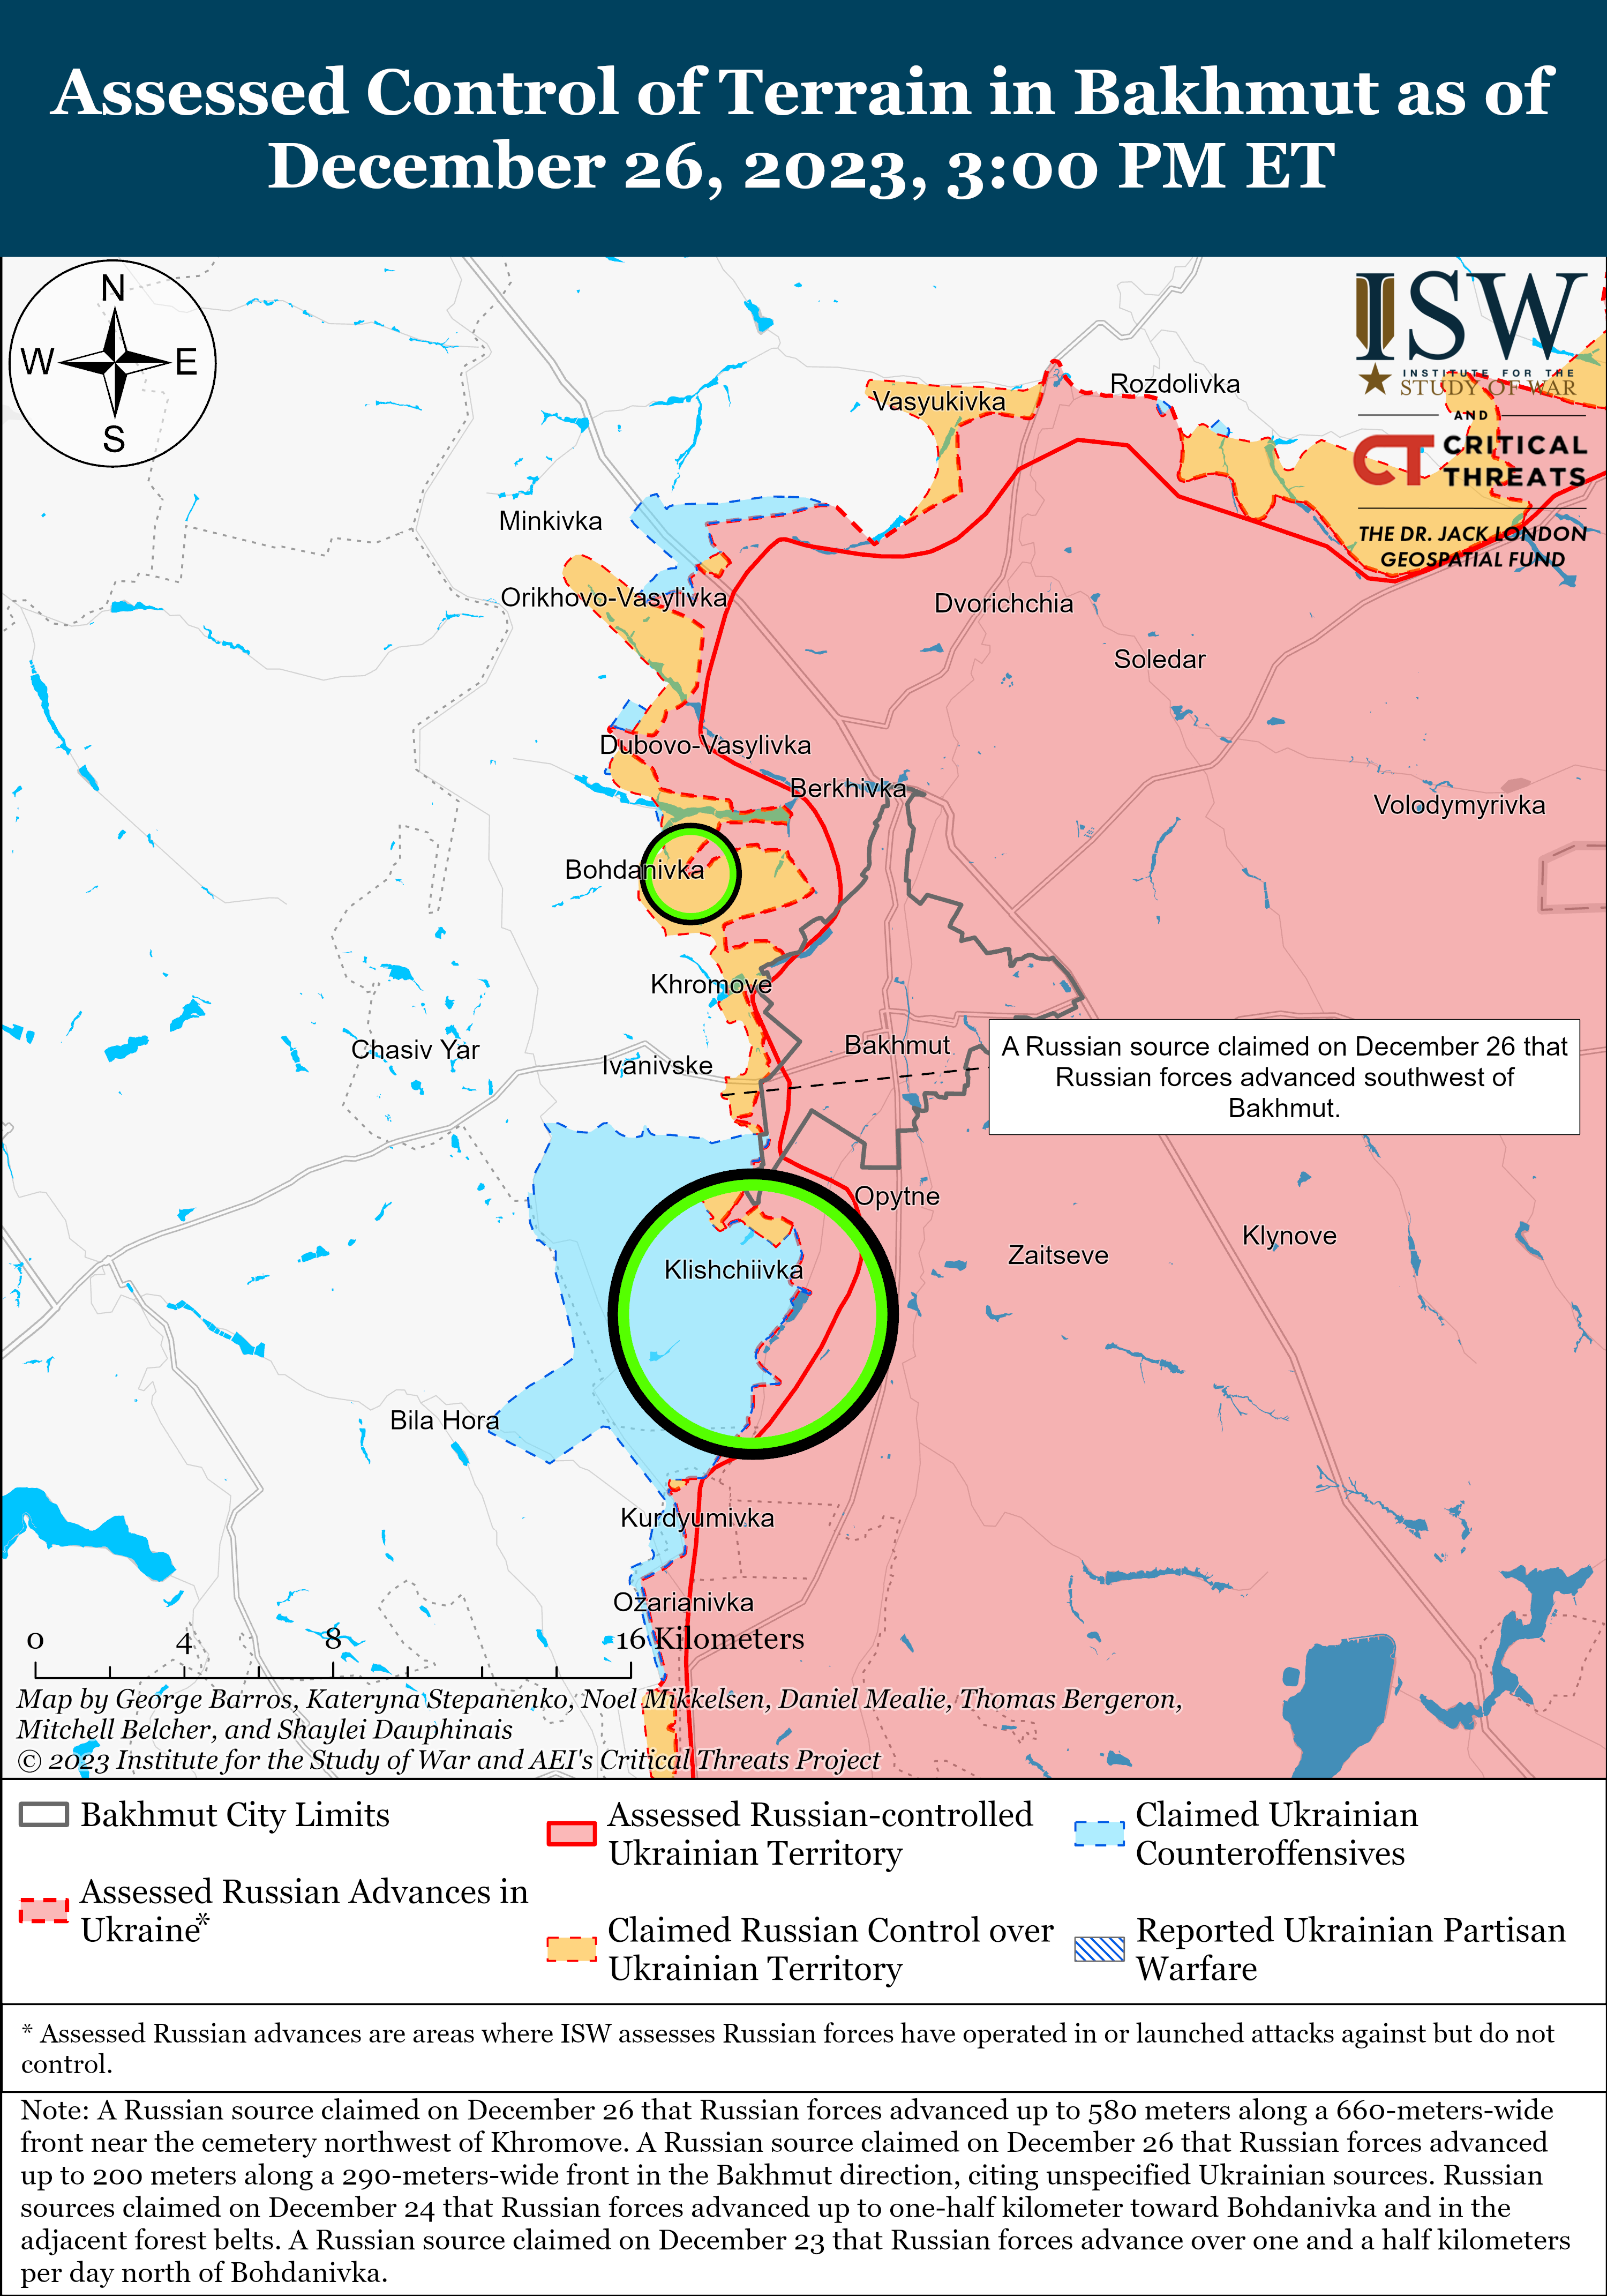 Позиційні бої відбулися на південь Гуляйполя та біля Роботиного: карти ISW